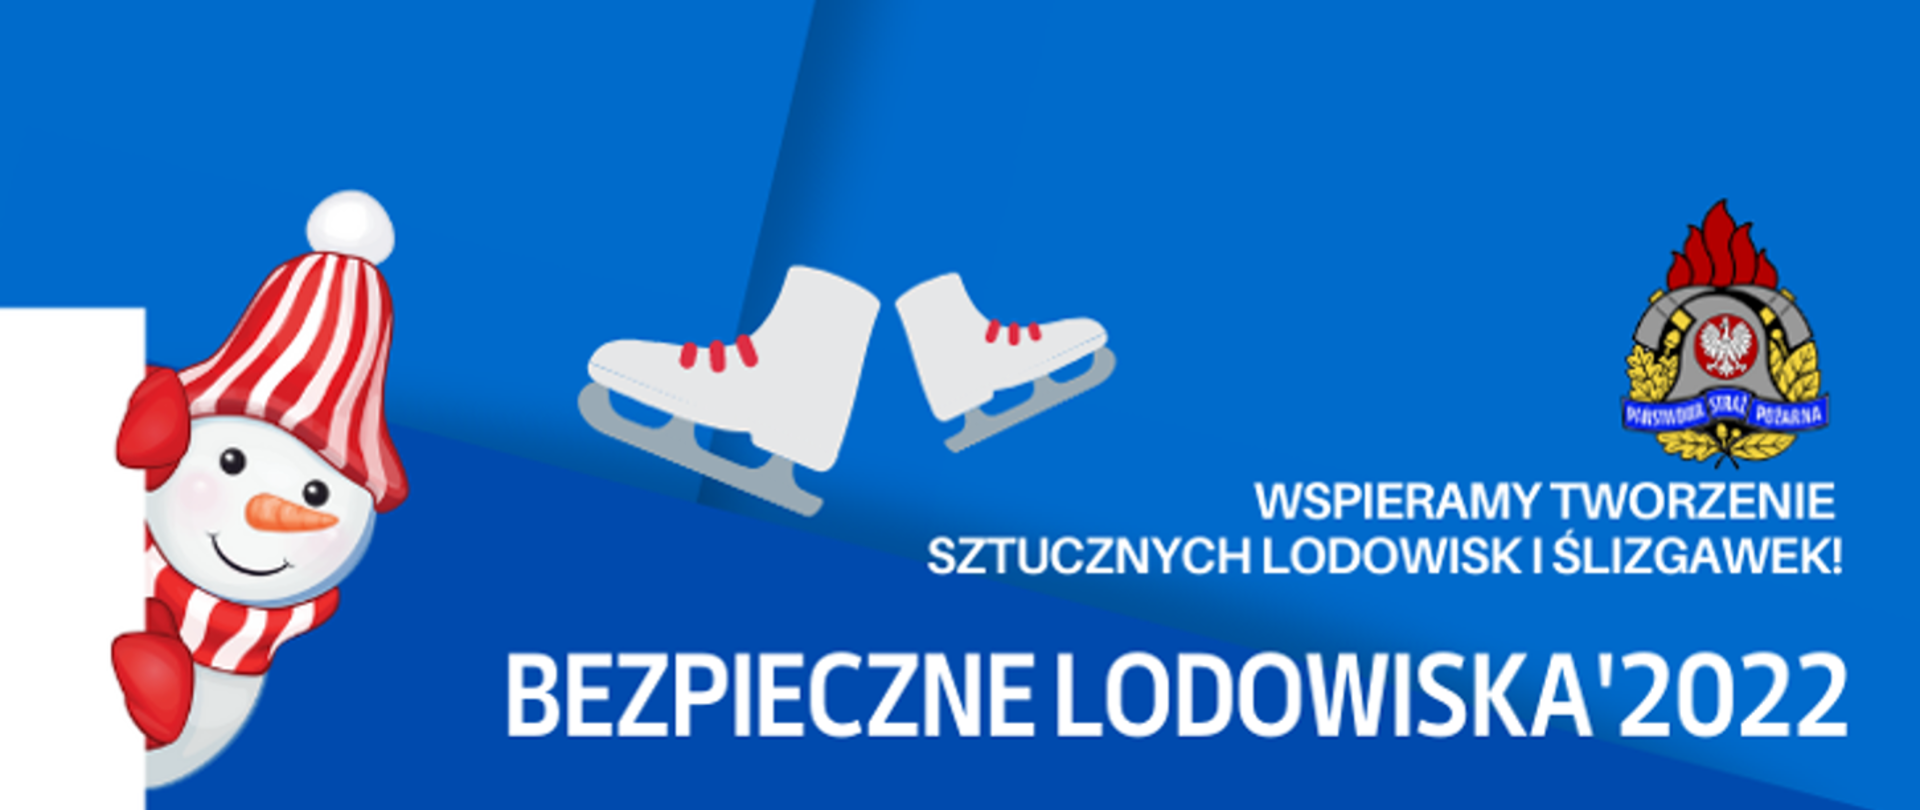 Obrazek przedstawia bałwanka i łyżwy oraz napis Bezpieczne Lodowiska 2022